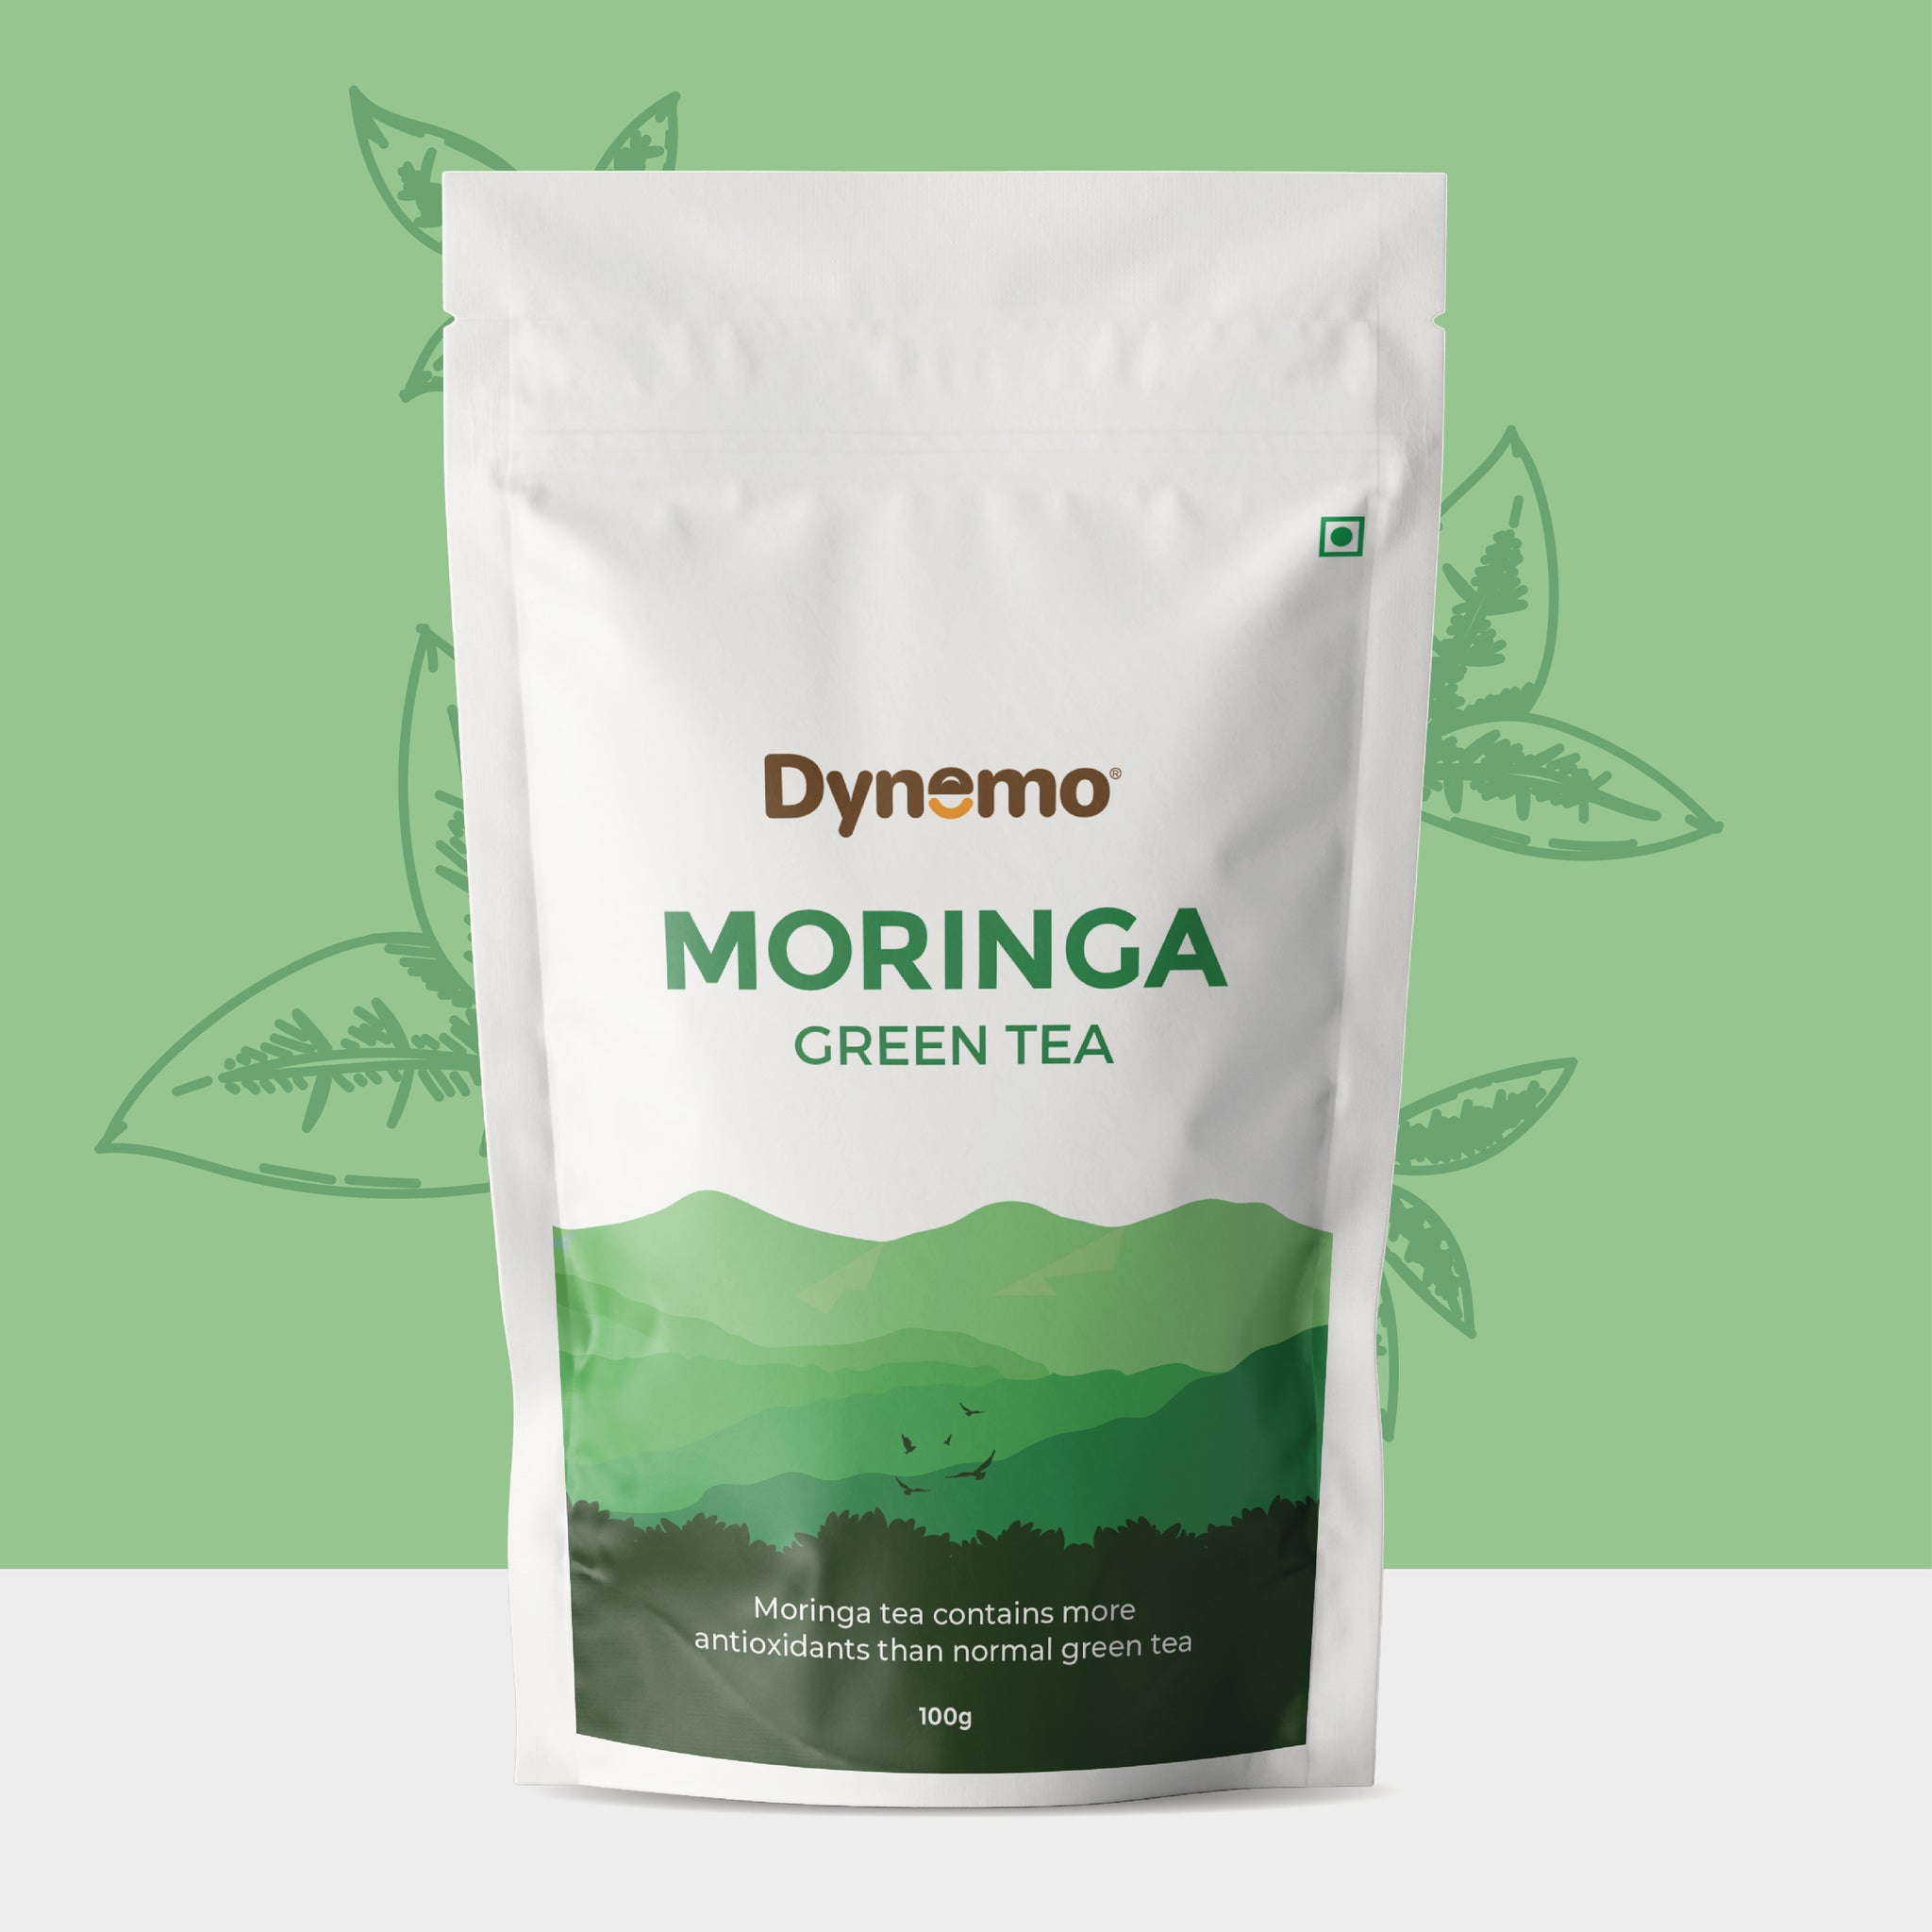 Dynemo Moringa Green Tea